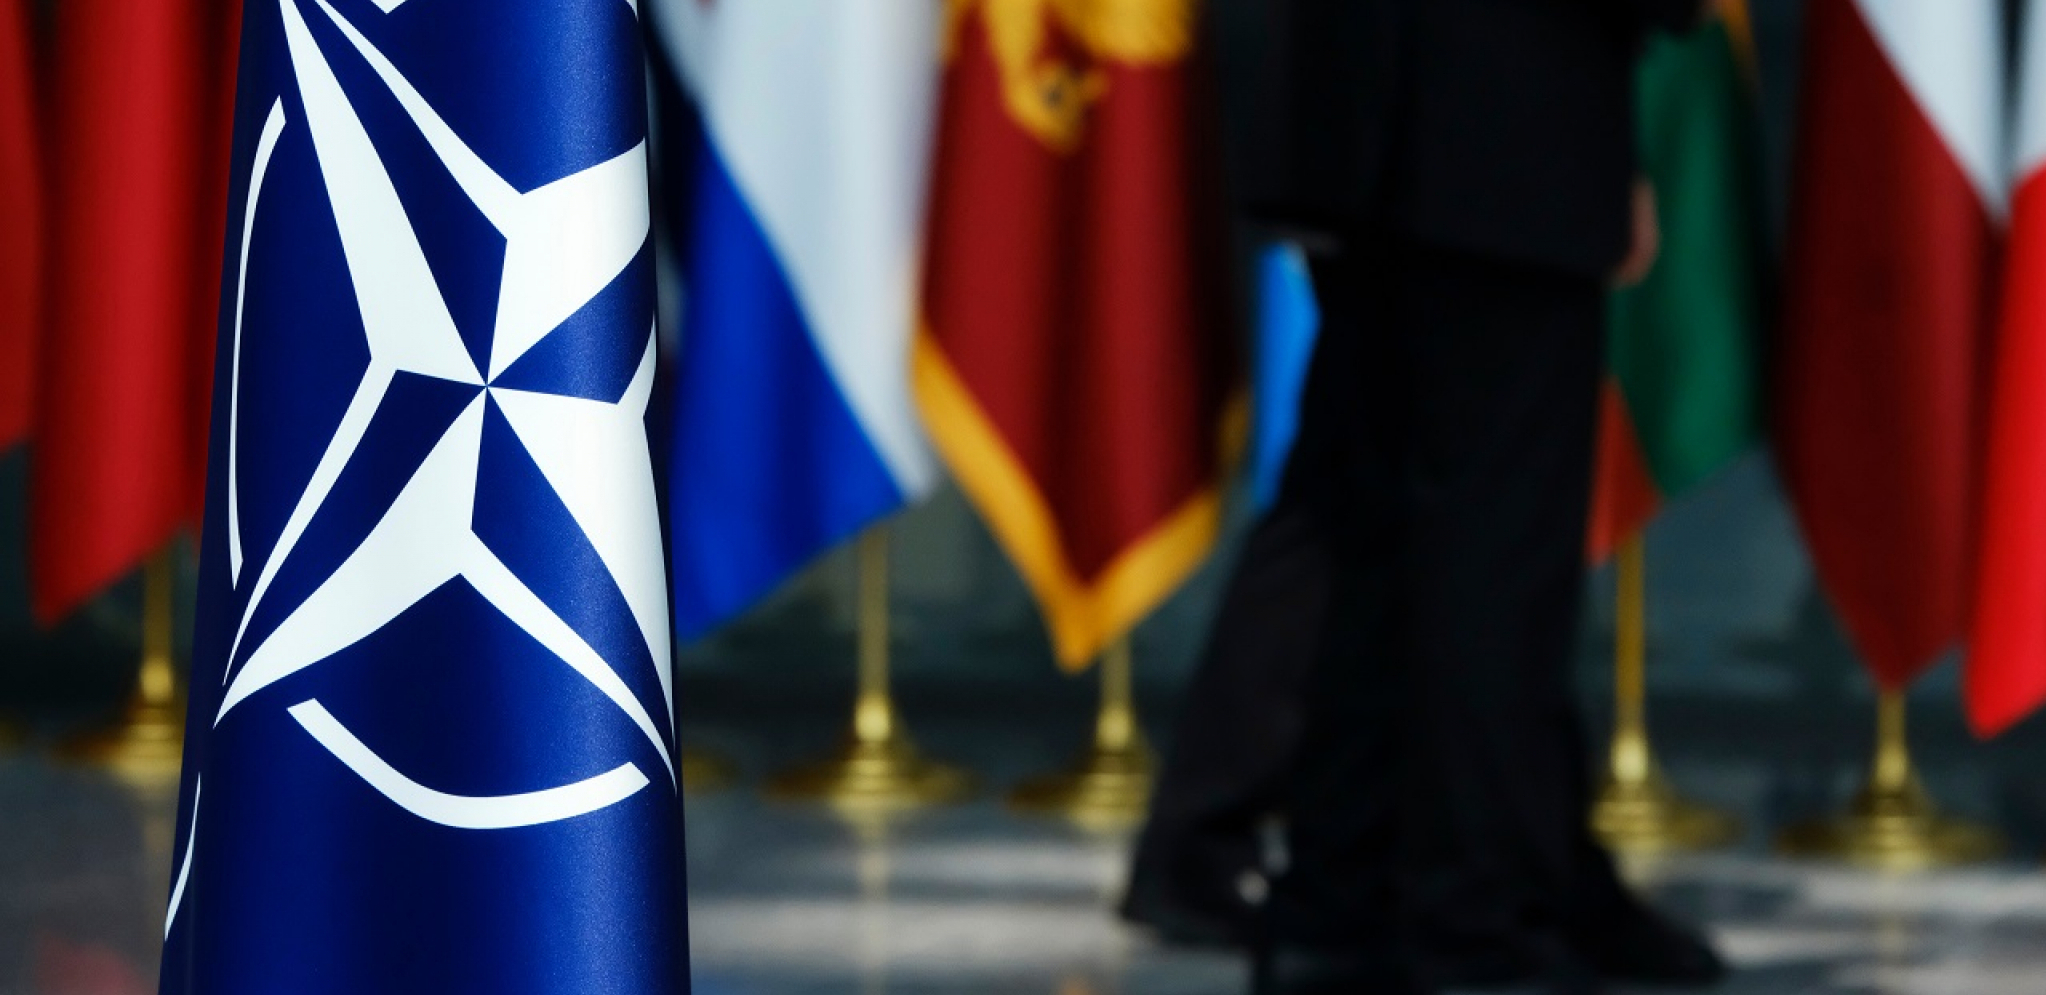 ŠVEDSKA I FINSKA NA SAMITU U JUNU U MADRIDU Premijer Španije Pedro Sančez najavio prijem skandinavskih država u NATO